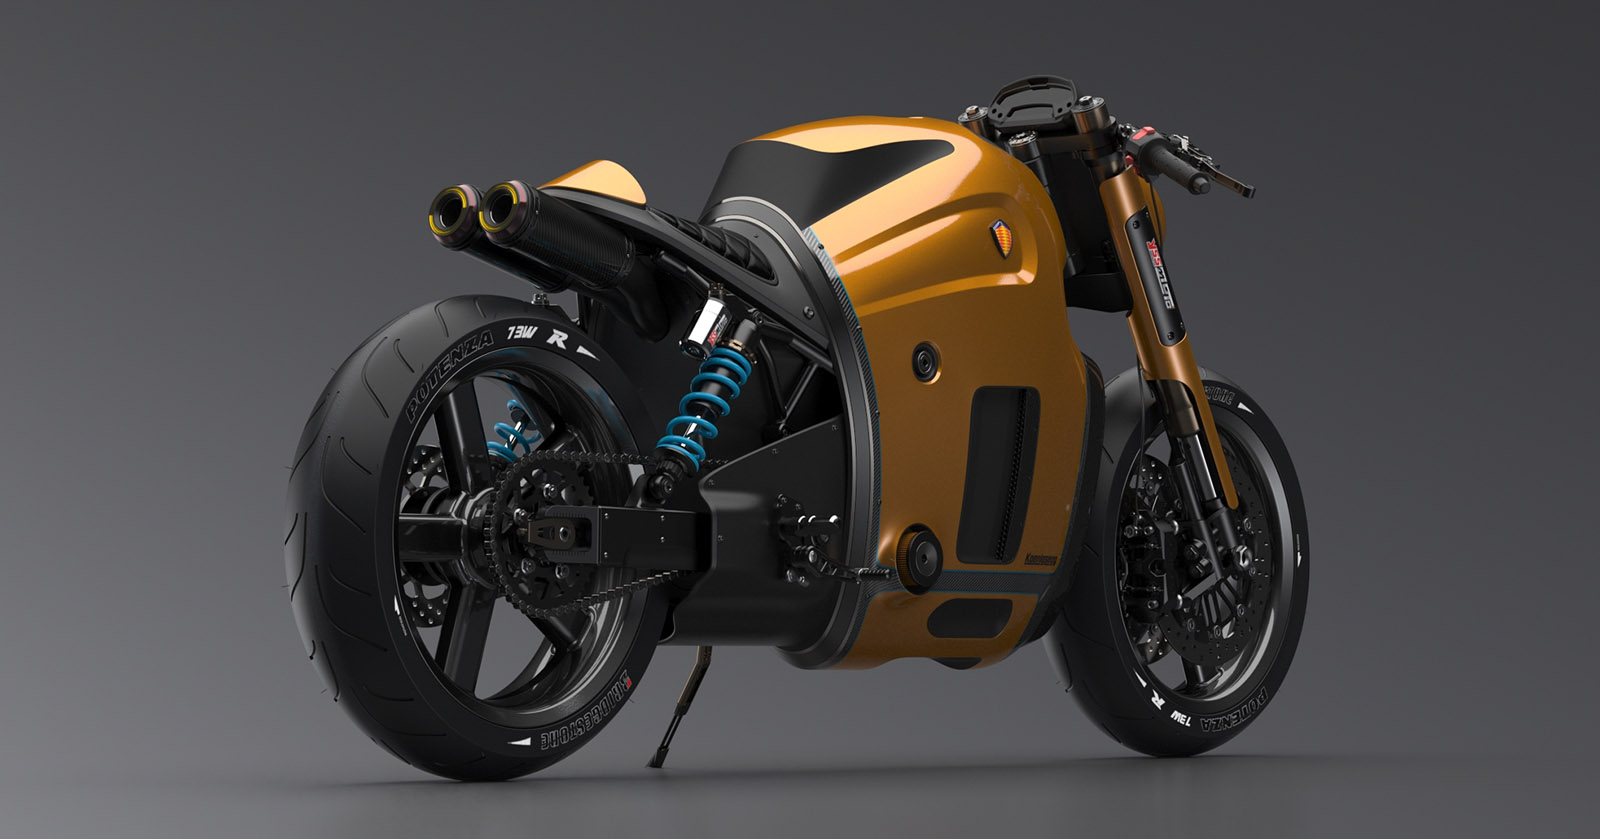 Inilah Desain Sepeda Motor Rancangan Produsen Mobil Koenigsegg